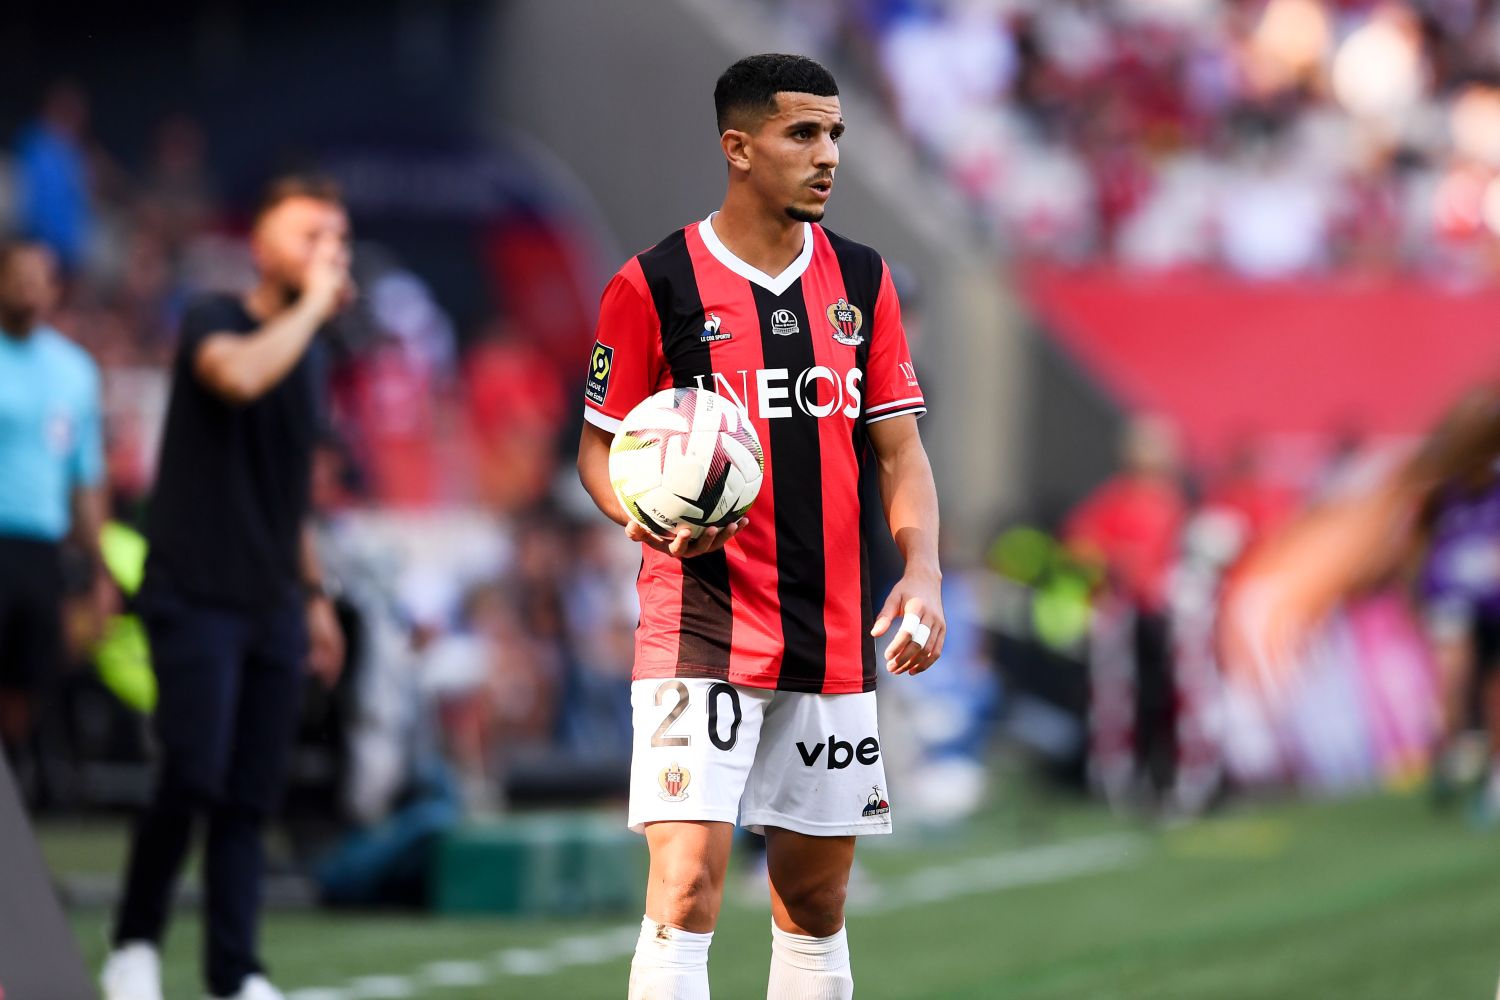 OFICJALNIE: OGC Nice zawiesiło piłkarza za popieranie Palestyny